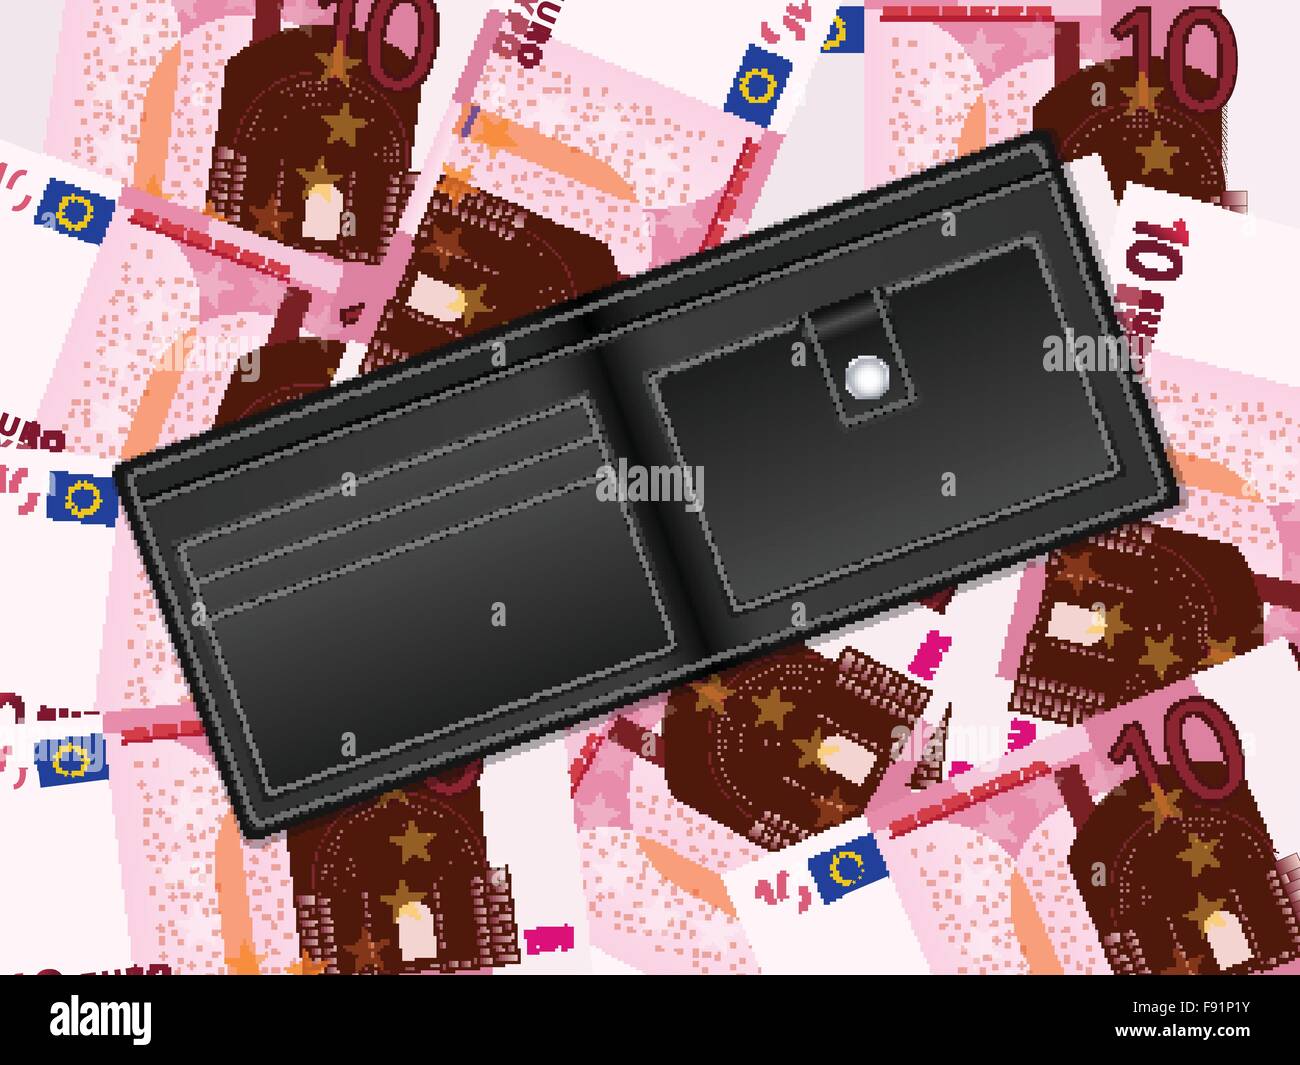 Brieftasche auf zehn Euro-Banknoten Hintergrund. Vektor-Illustration. Stock Vektor